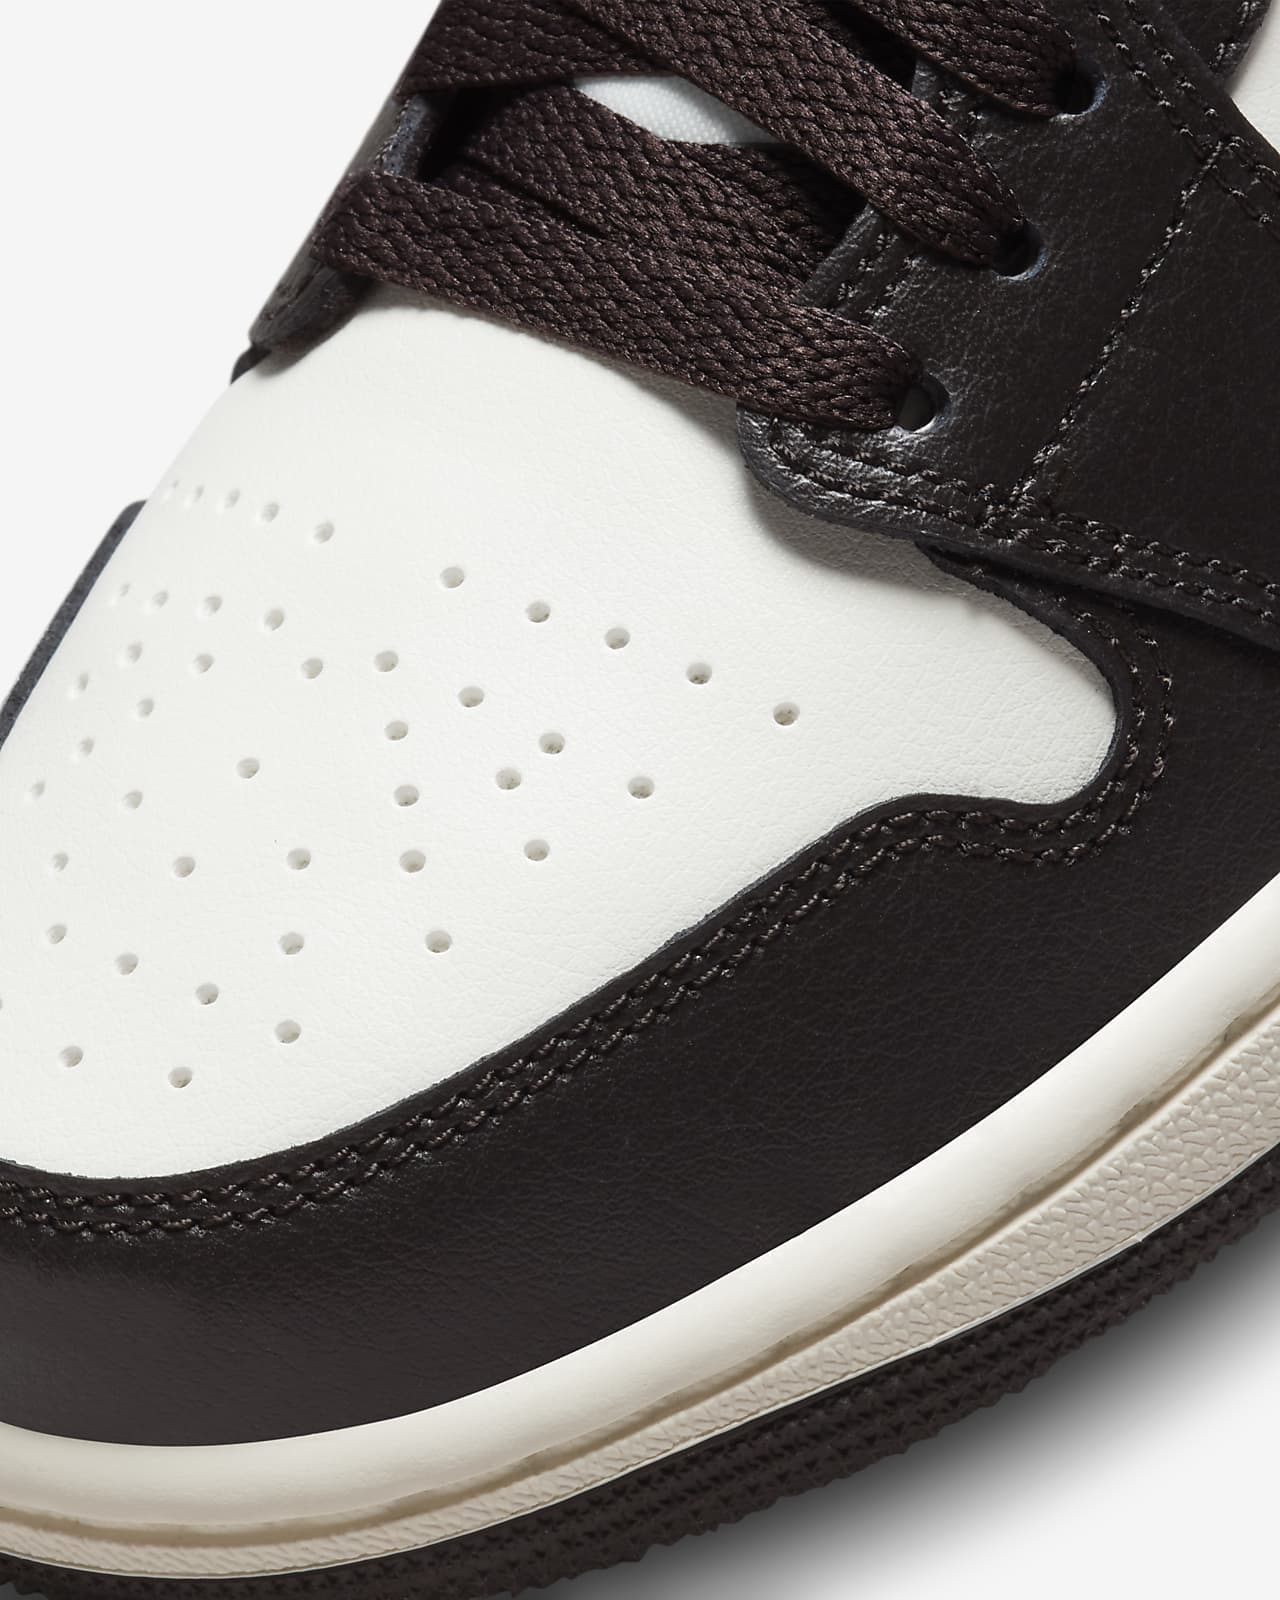 Cyberruimte Oordeel steenkool Air Jordan 1 Low Women's Shoes. Nike.com